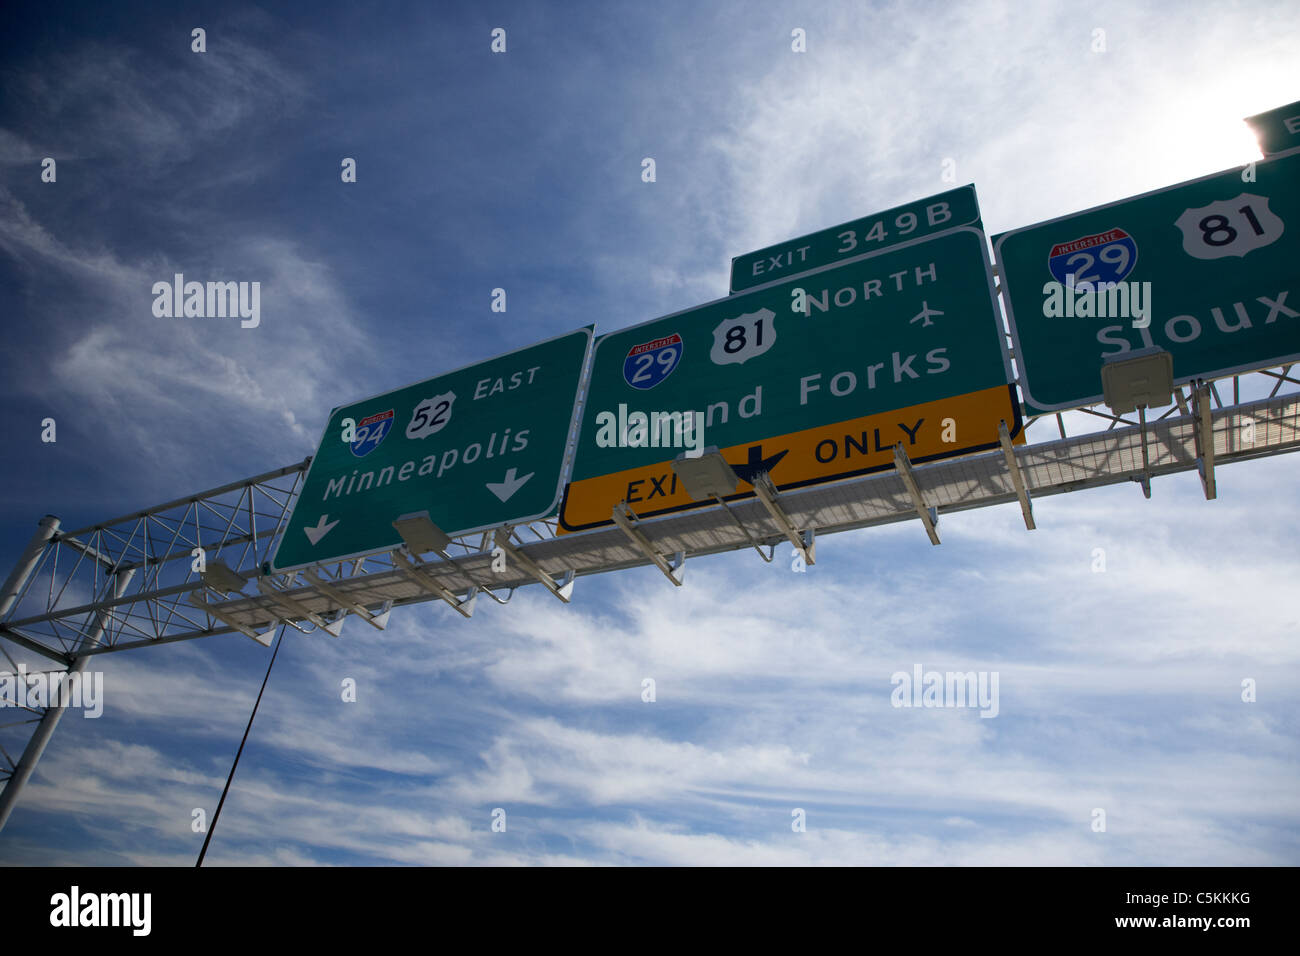 Interstate signe pour grand forks minneapolis et Sioux City, dans le Dakota du Nord, USA Banque D'Images